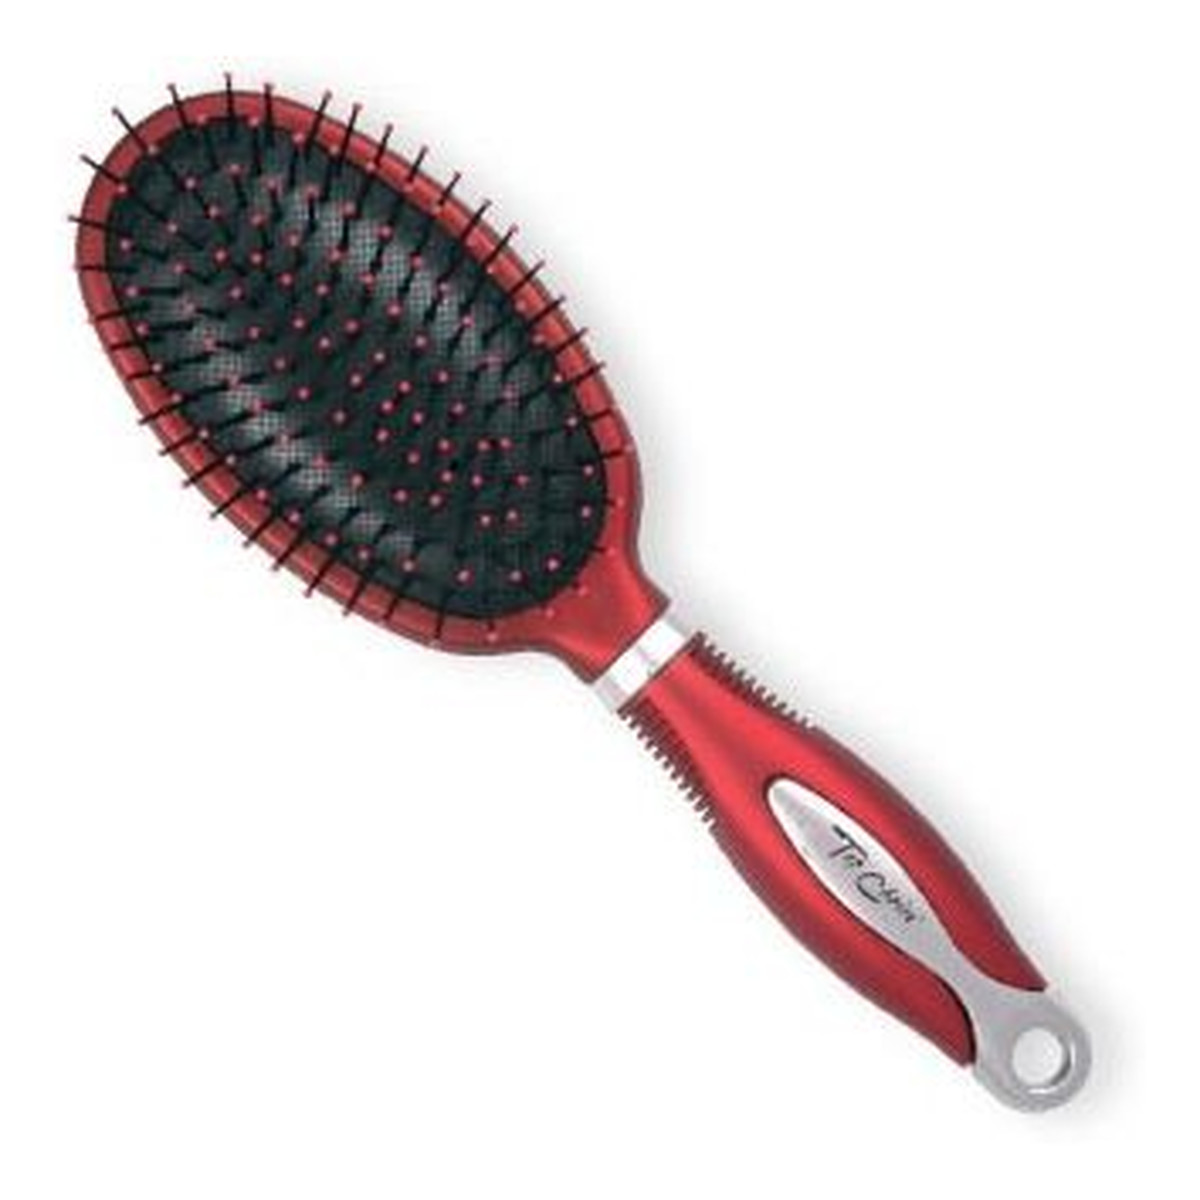 Top Choice Exclusive Hair Brush szczotka szeroka srebrno-burgundowa 1 szt.